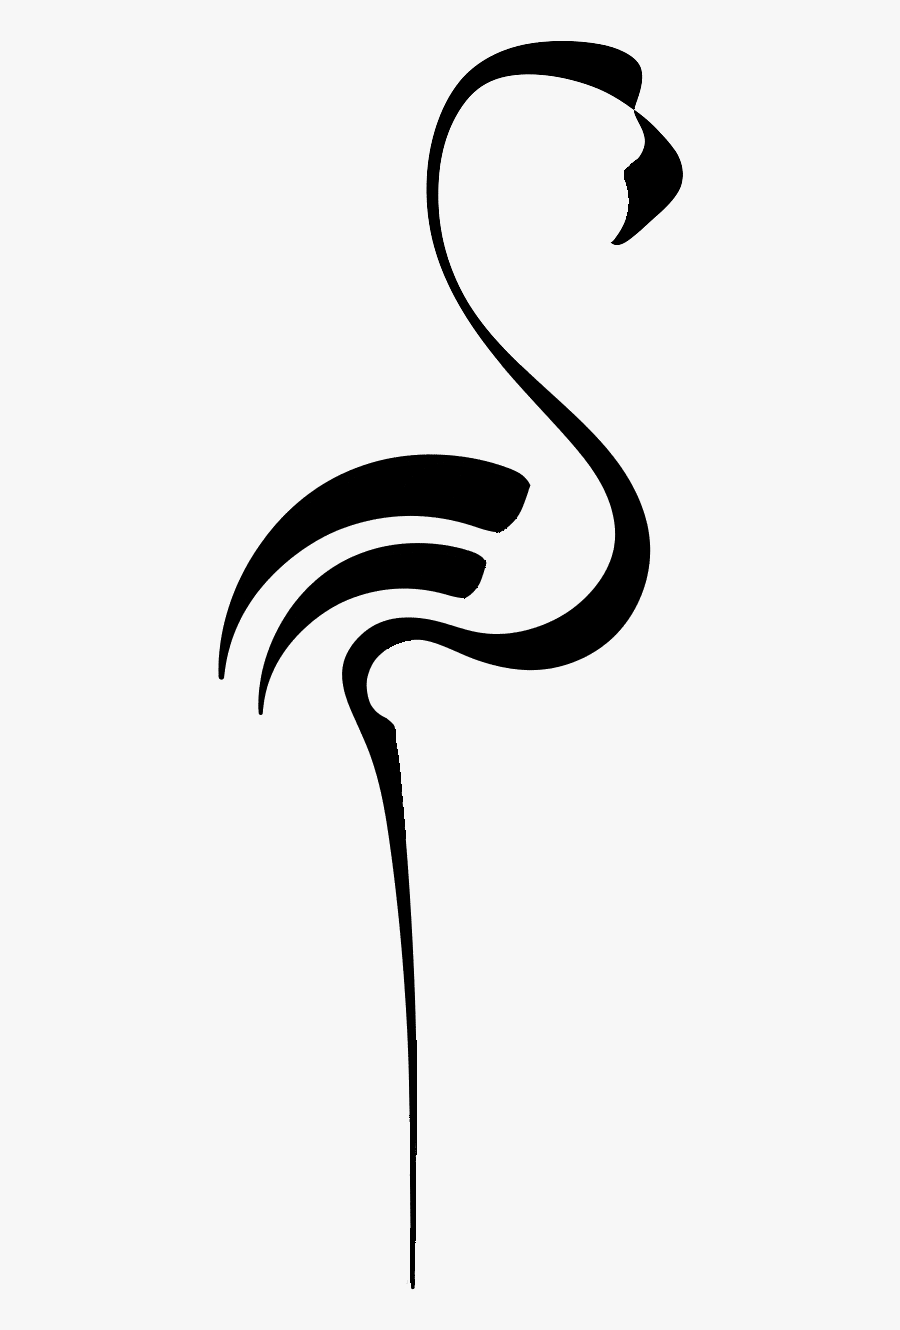 The Flamingo Logo - Flamingo Cartoon, Transparent Clipart